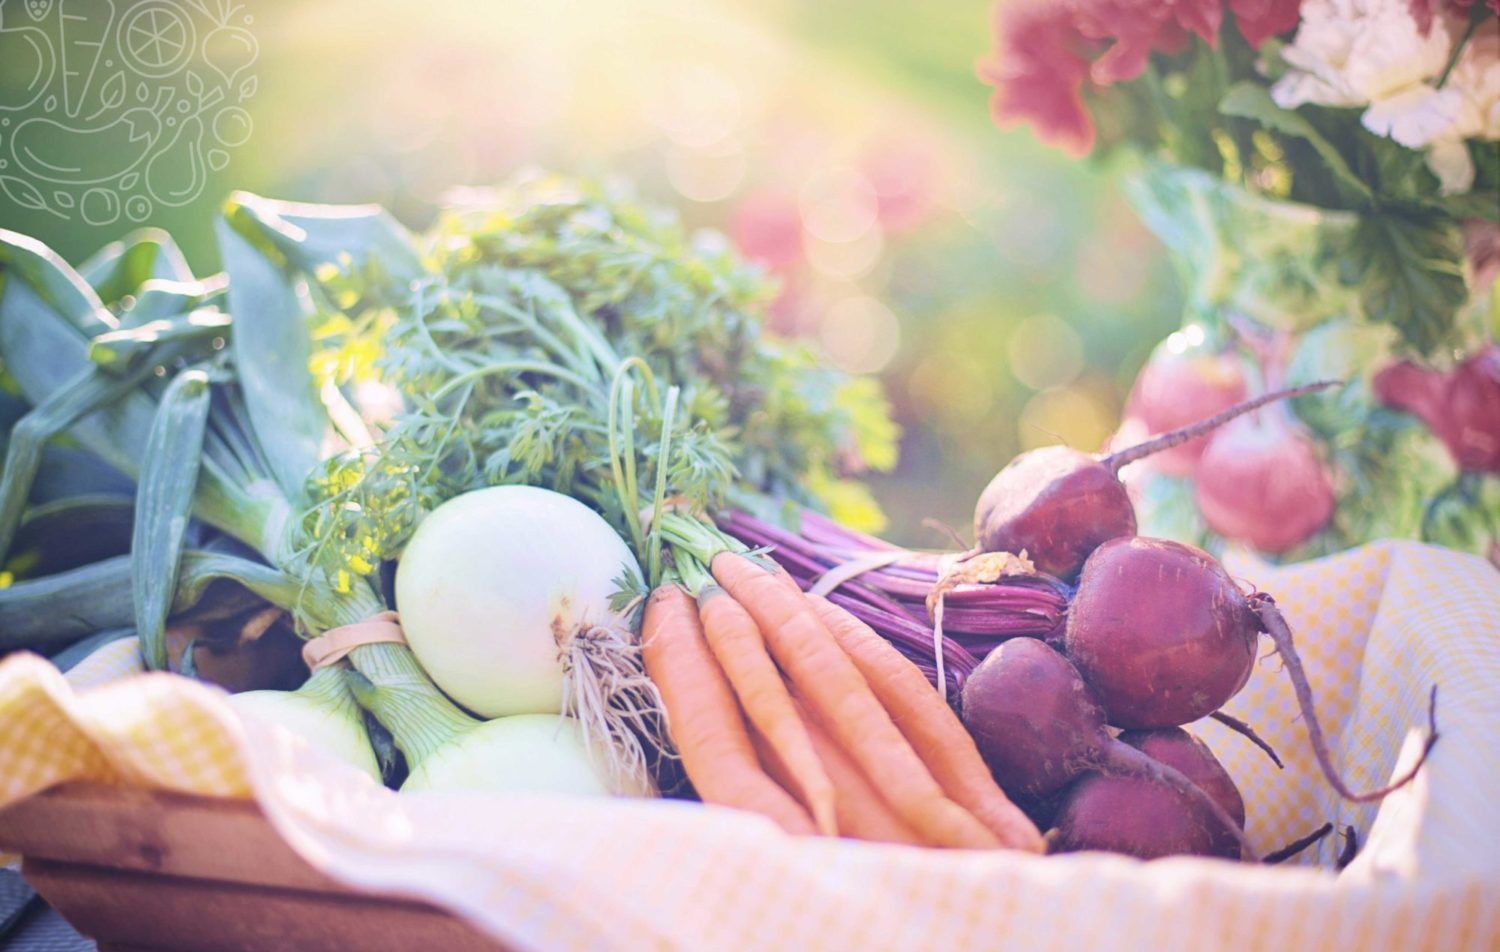 Eine gesunde Ernährung reich an Obst und Gemüse steigert die Fruchtbarkeit